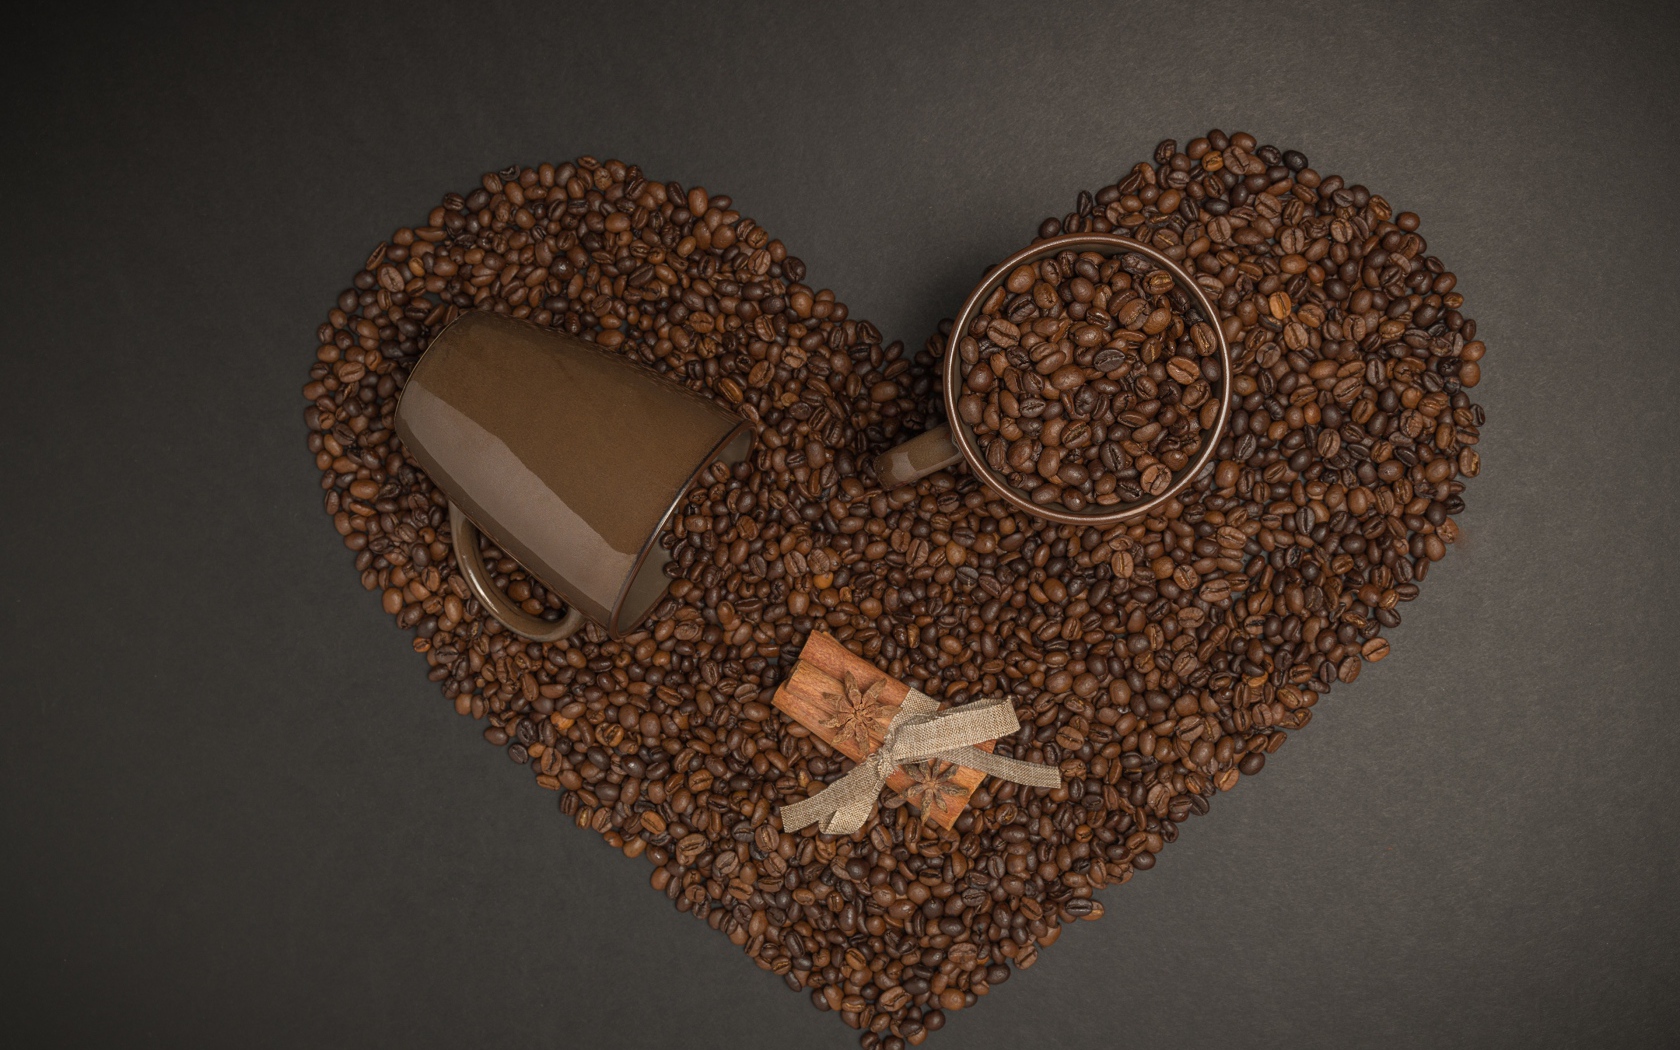 Сердце из кофейных зерен на сером фоне с кружками 